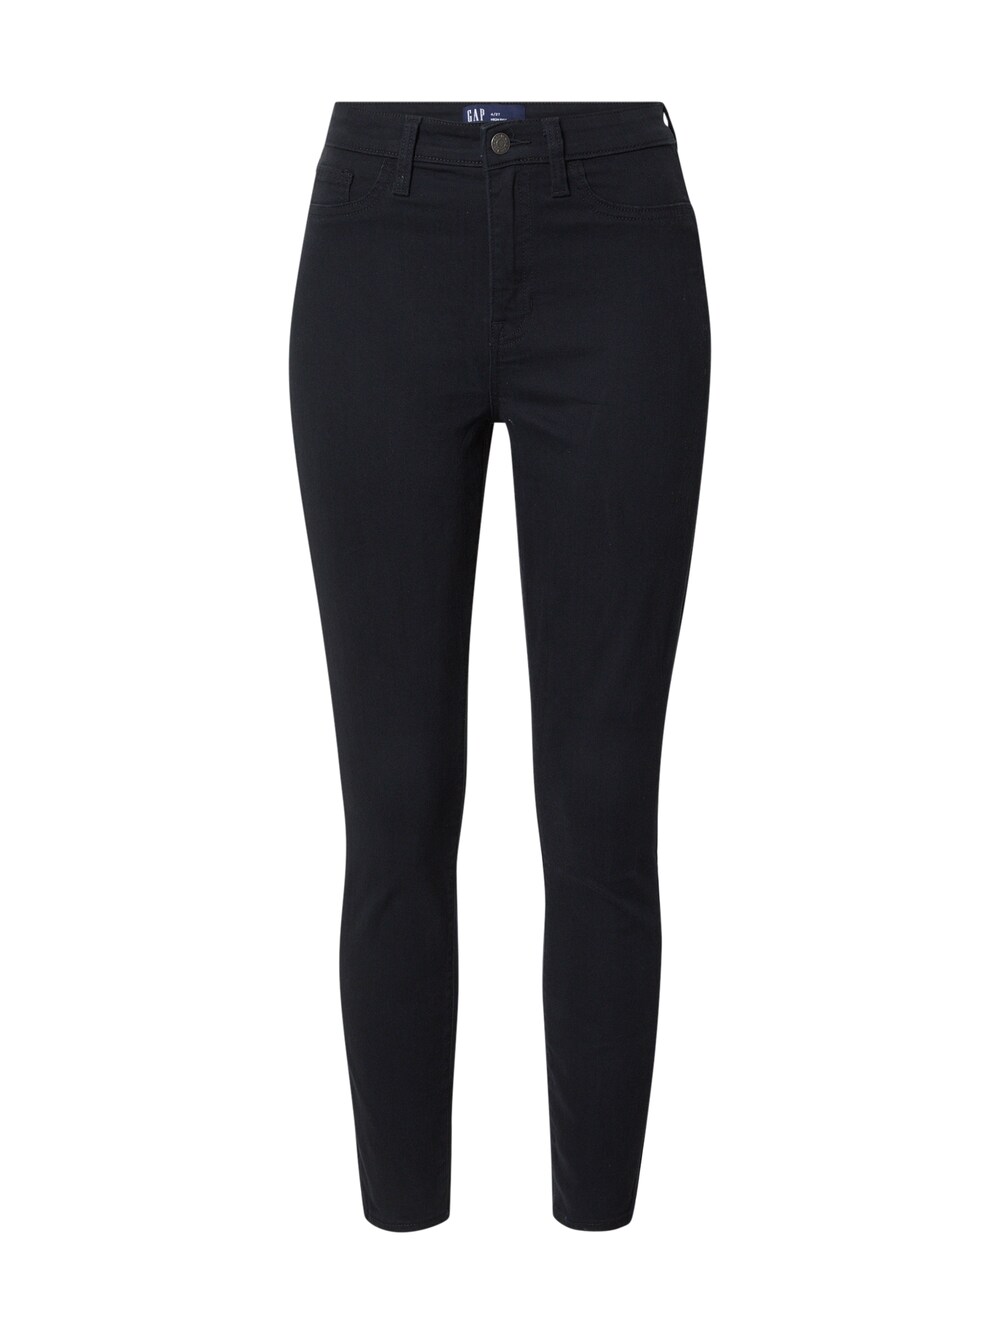 Узкие джинсы Gap, черный узкие джинсы gap черный